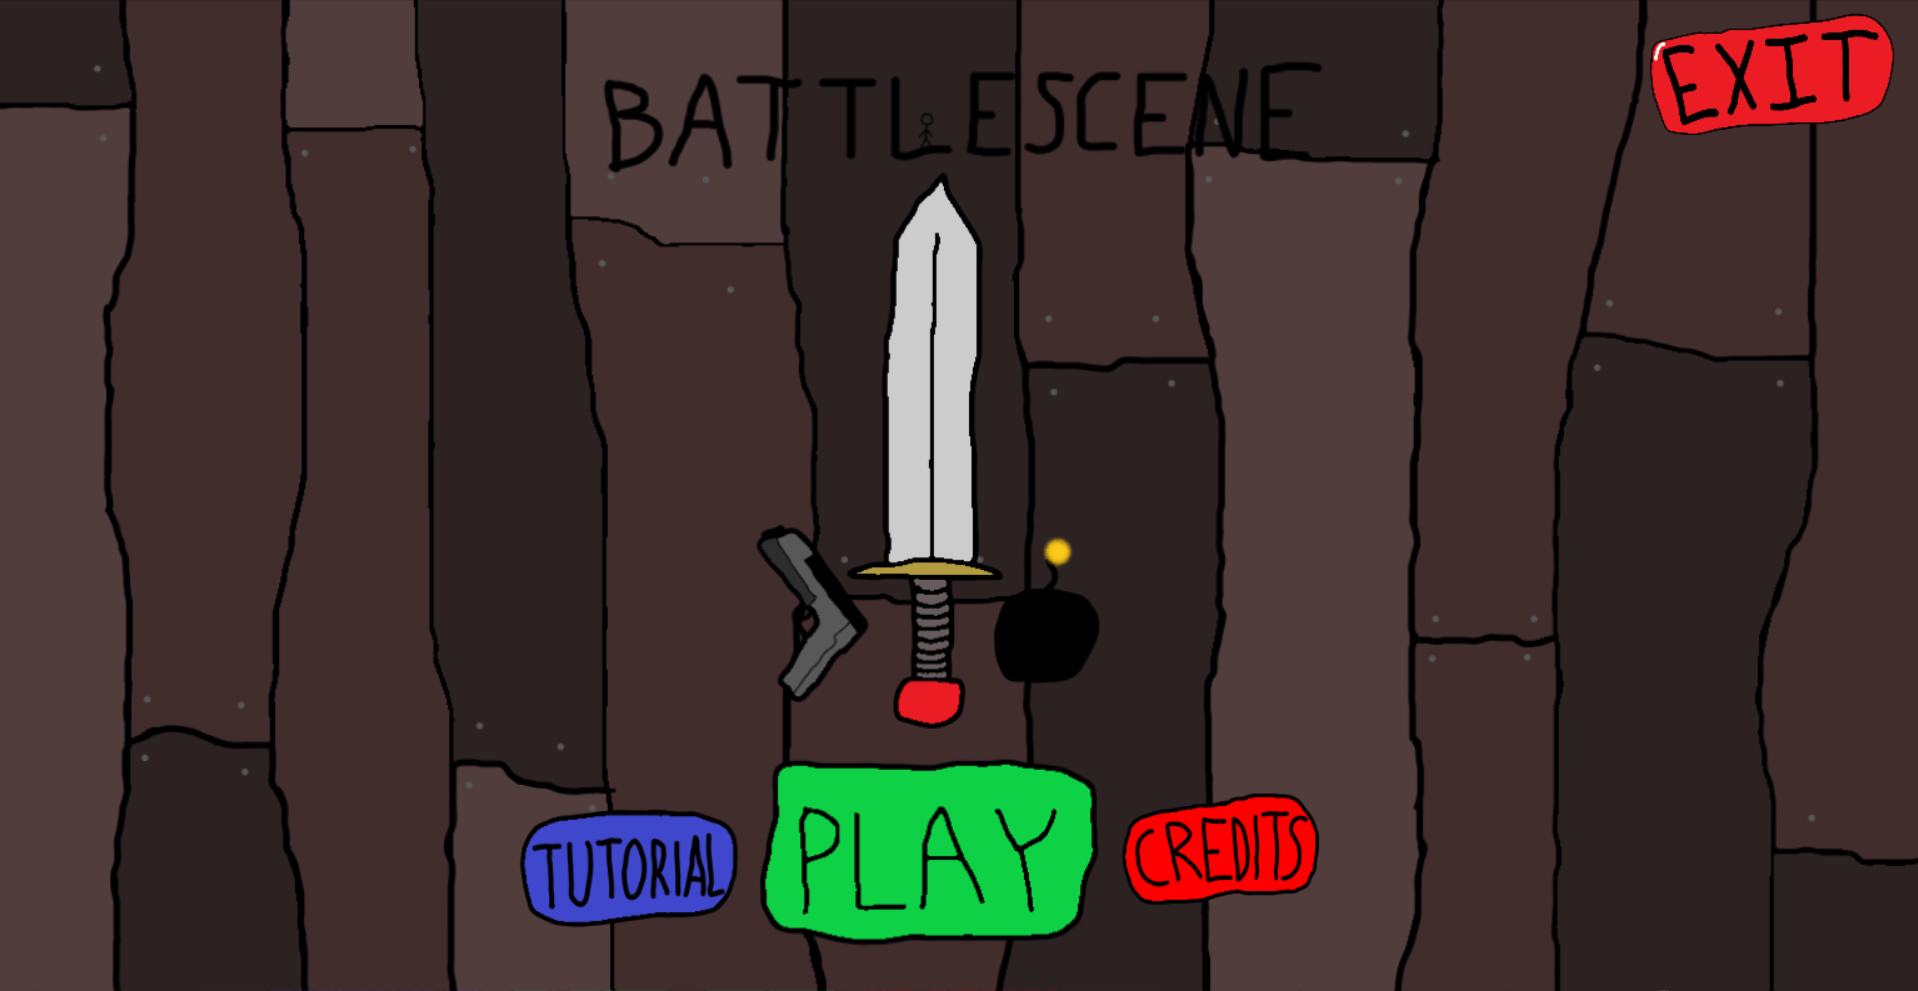 Battlescene